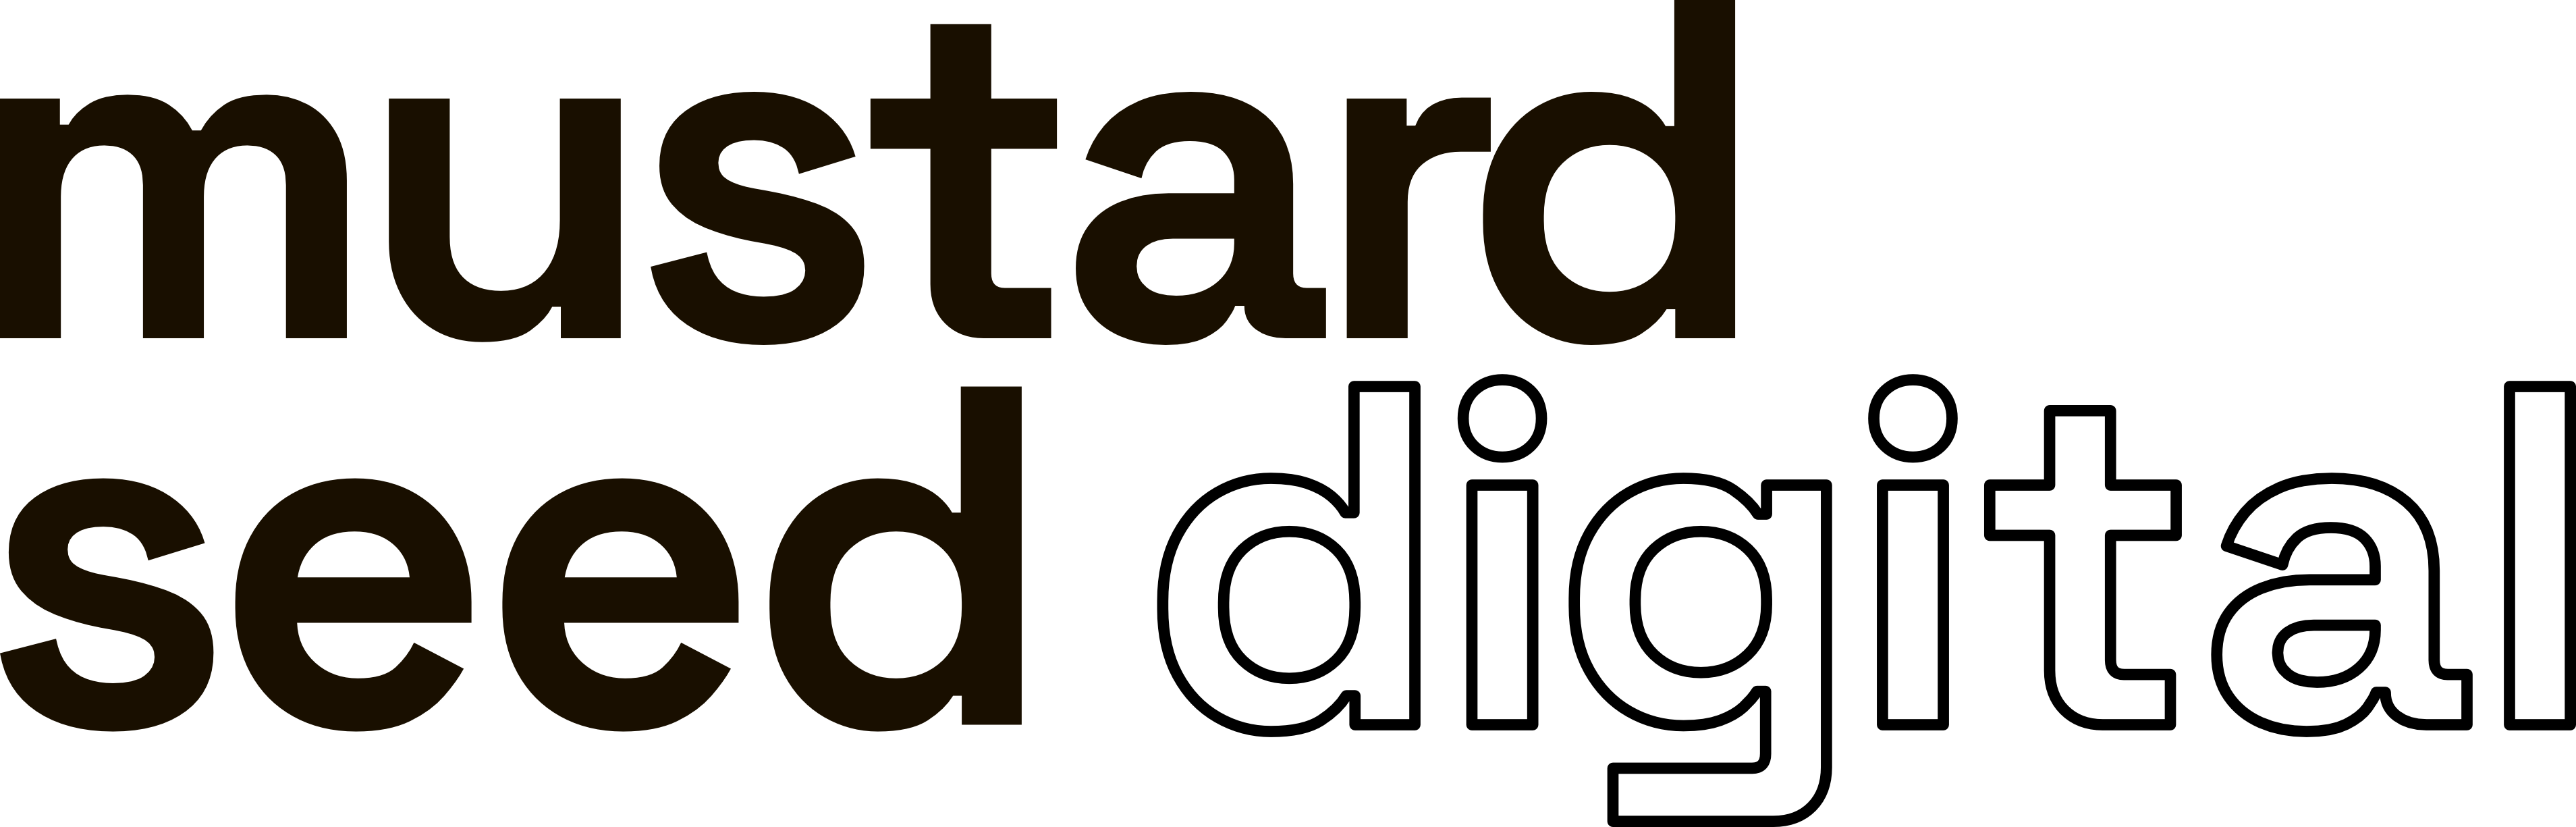 Mustard Seed Digital logo